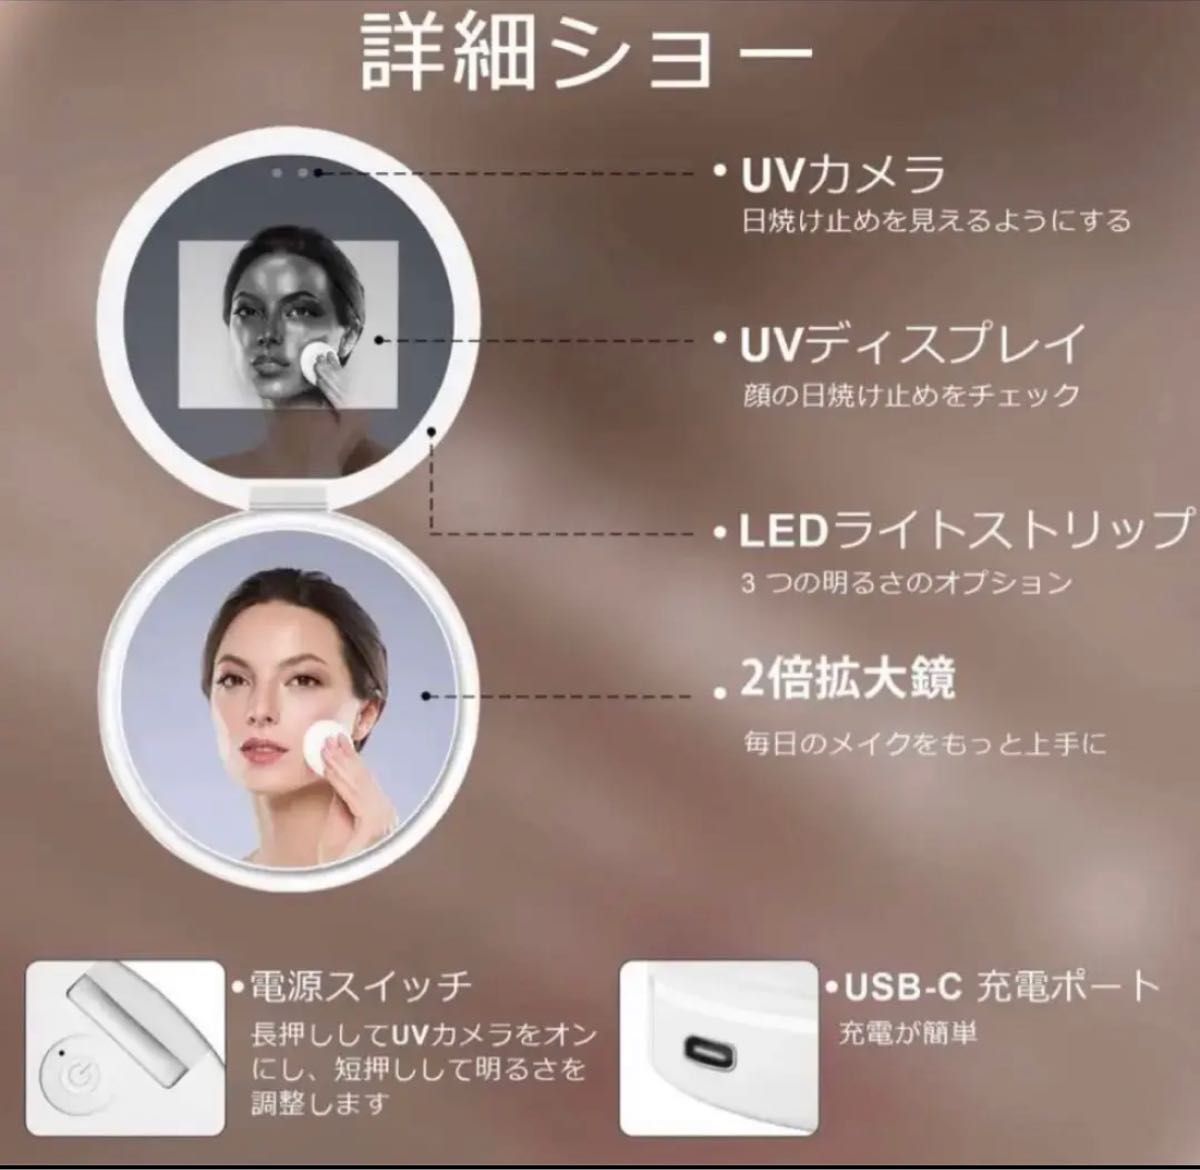 新品日焼け止めテスト用UVカメラ付きミラー コンパクトミラー 充電式 LED